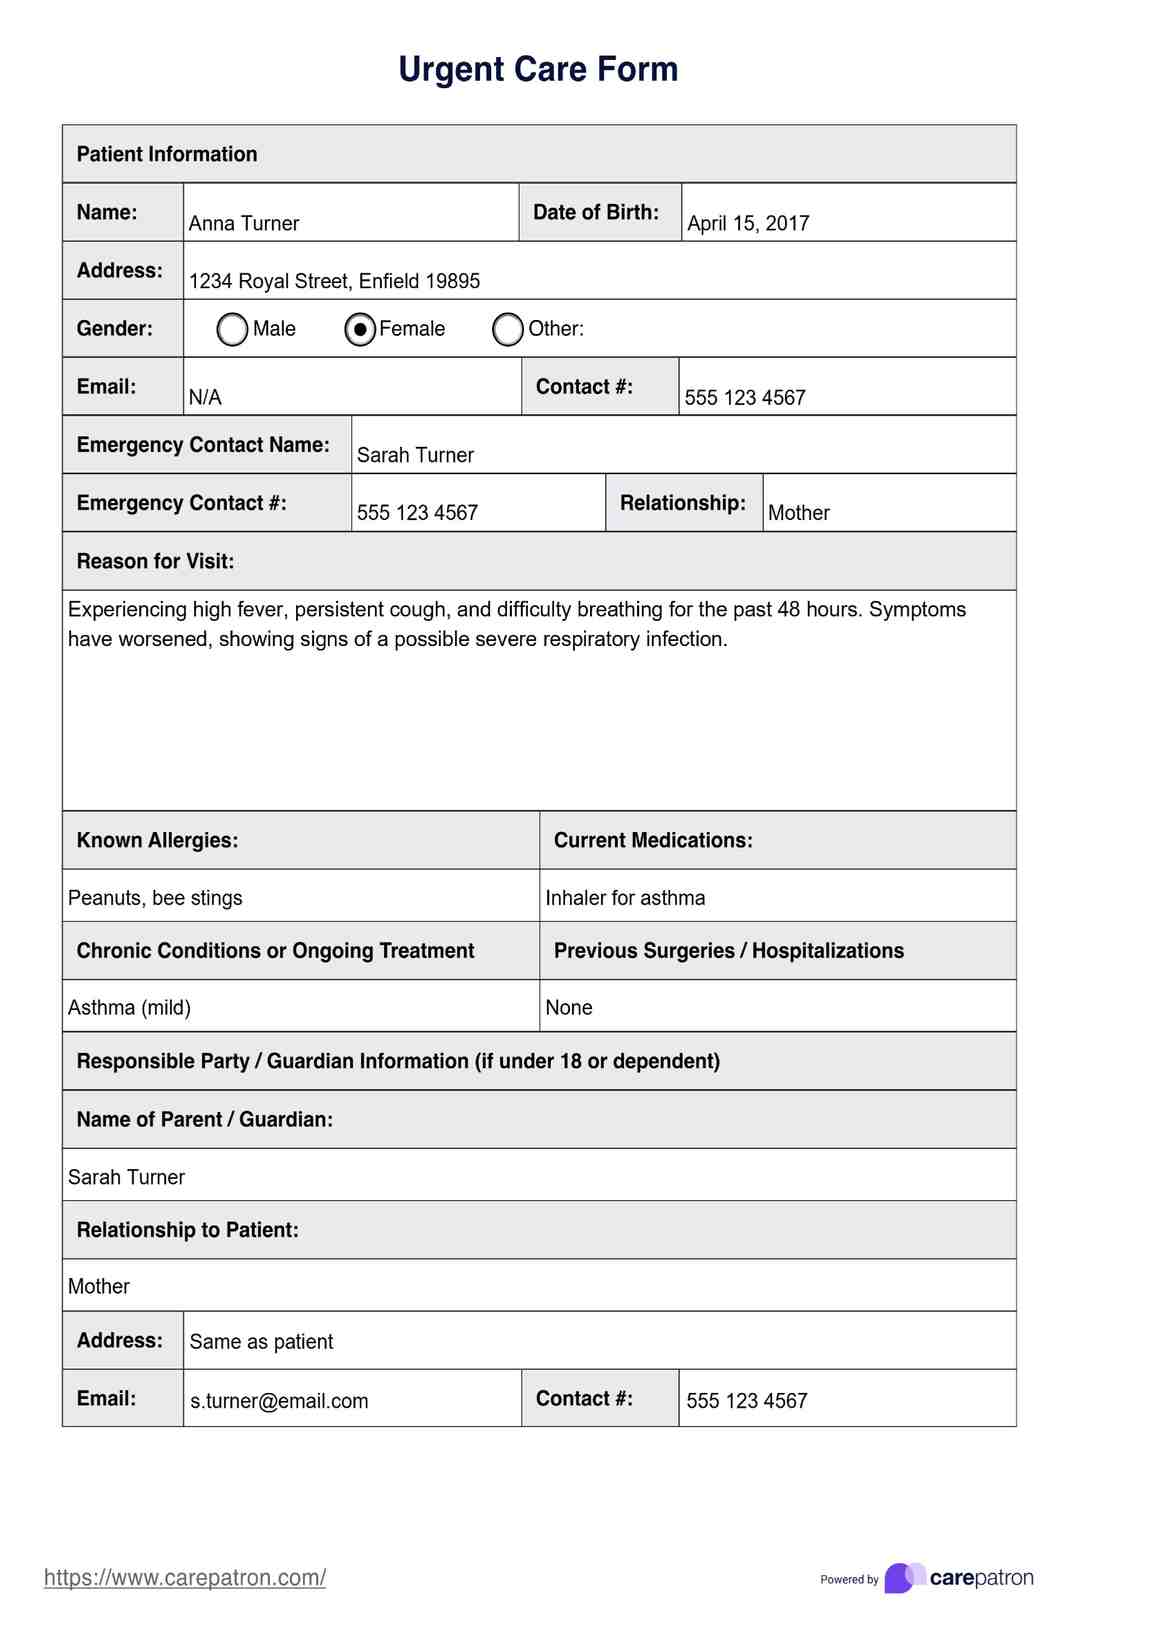 Urgent Care Form PDF Example